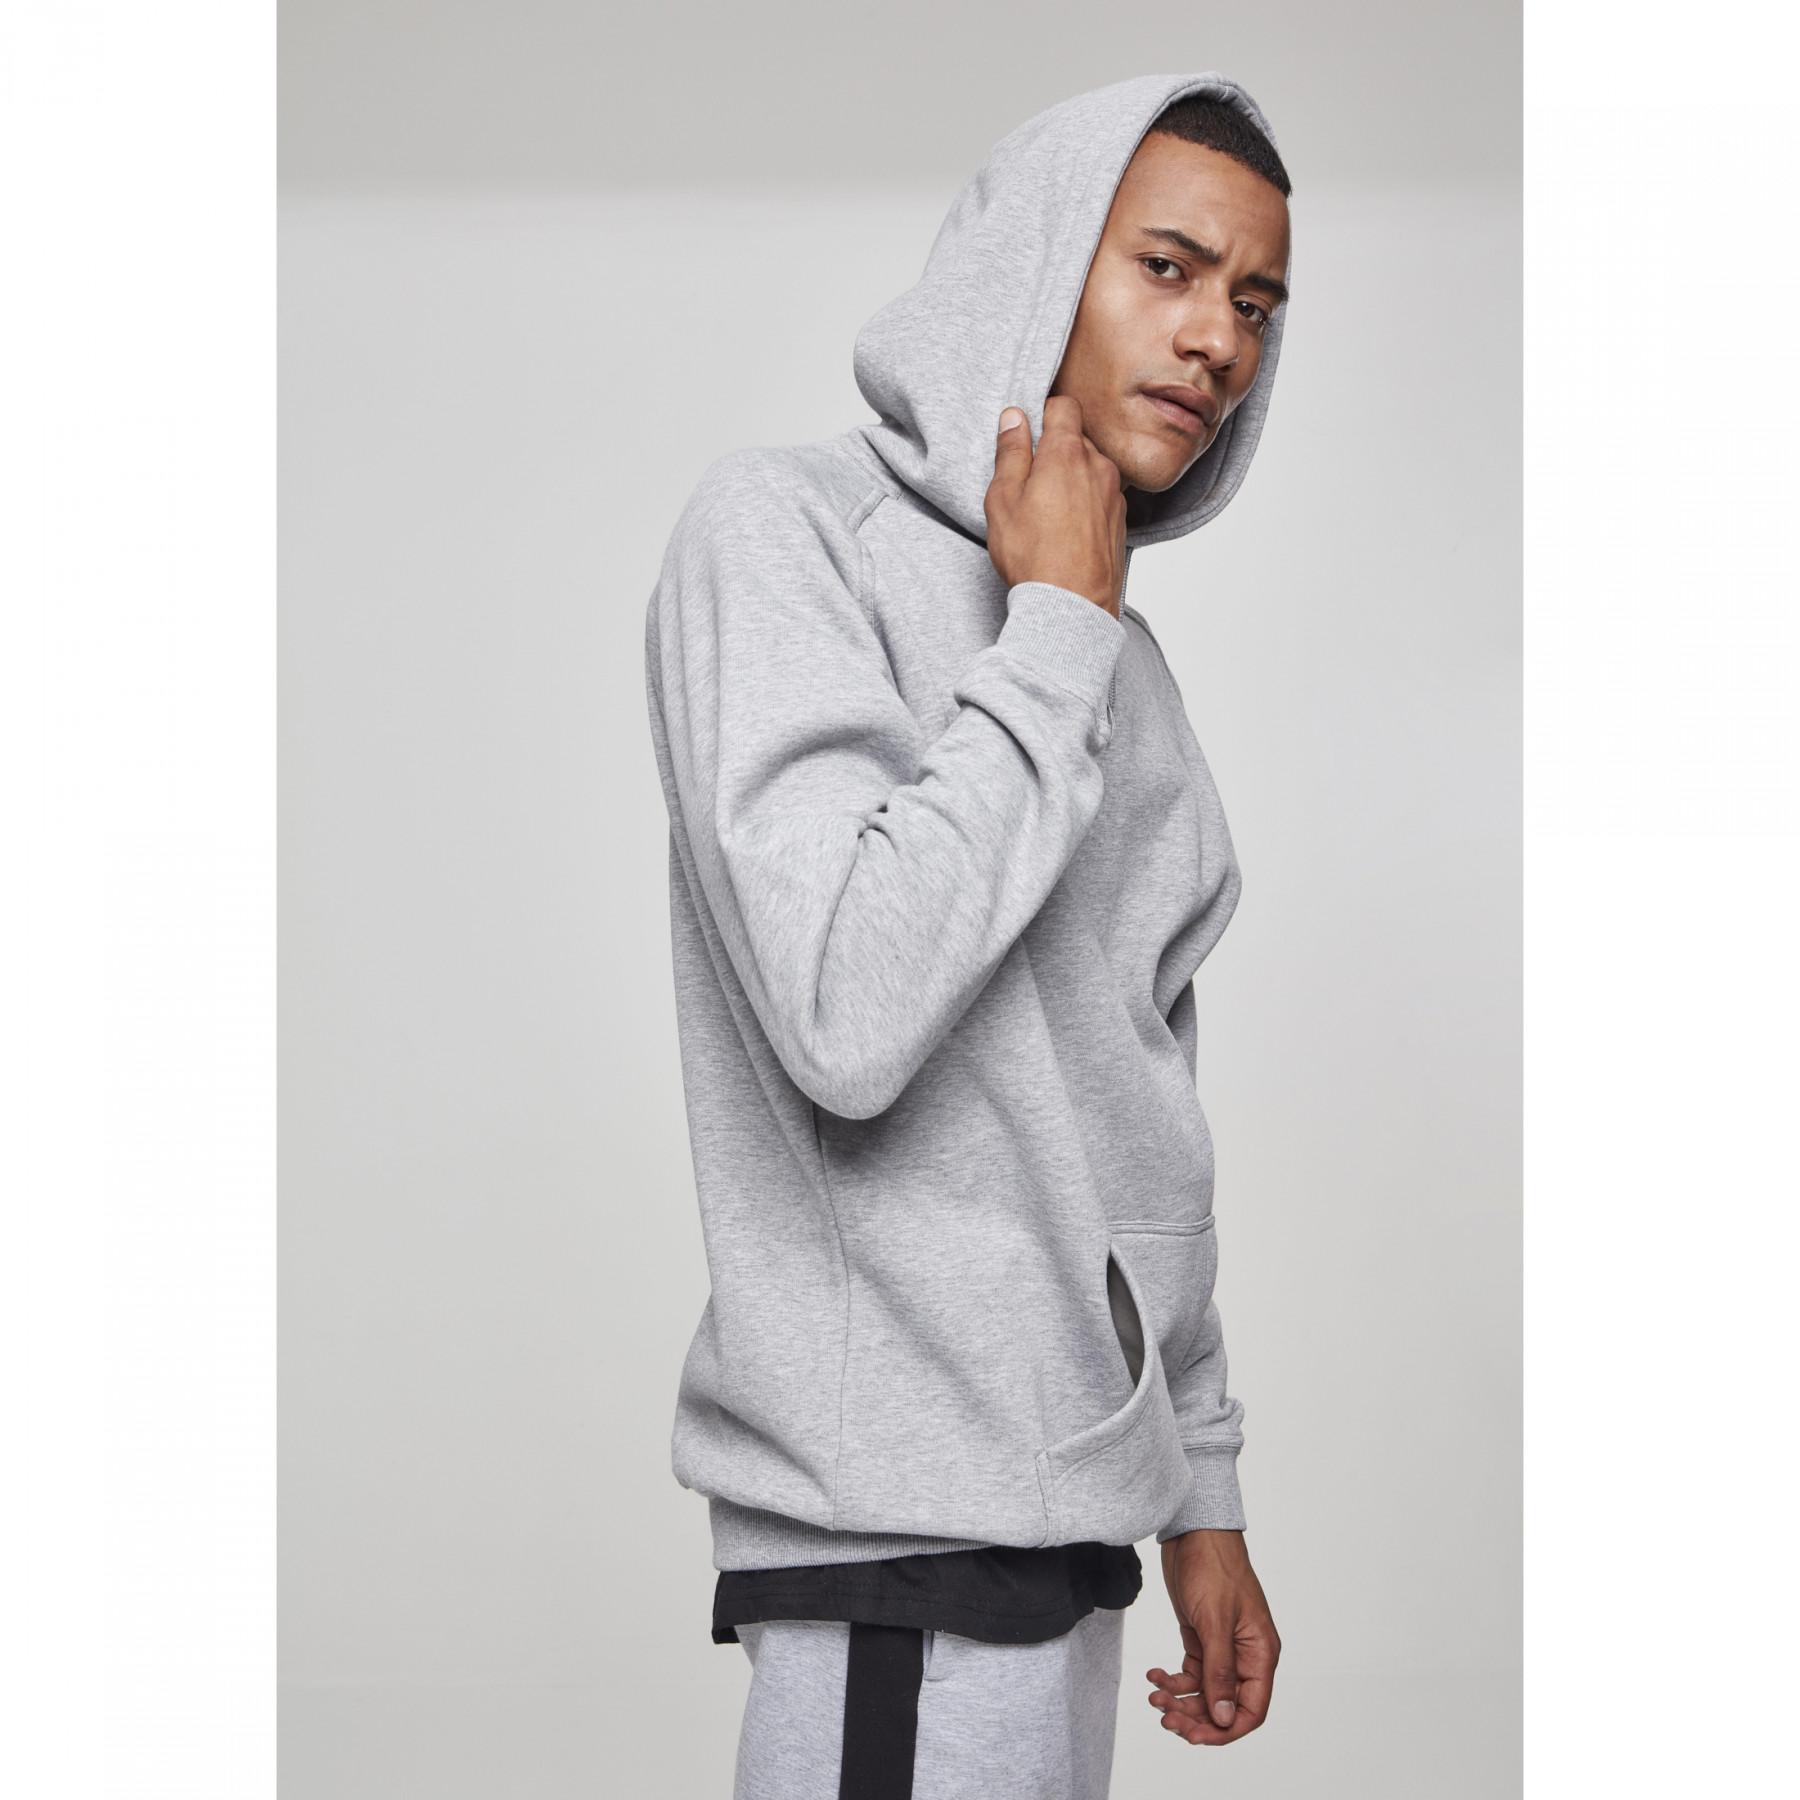 Hooded sweatshirt Sweats Classics - Hoodies - & Streetwear Classic Sweats tall Urban urban 